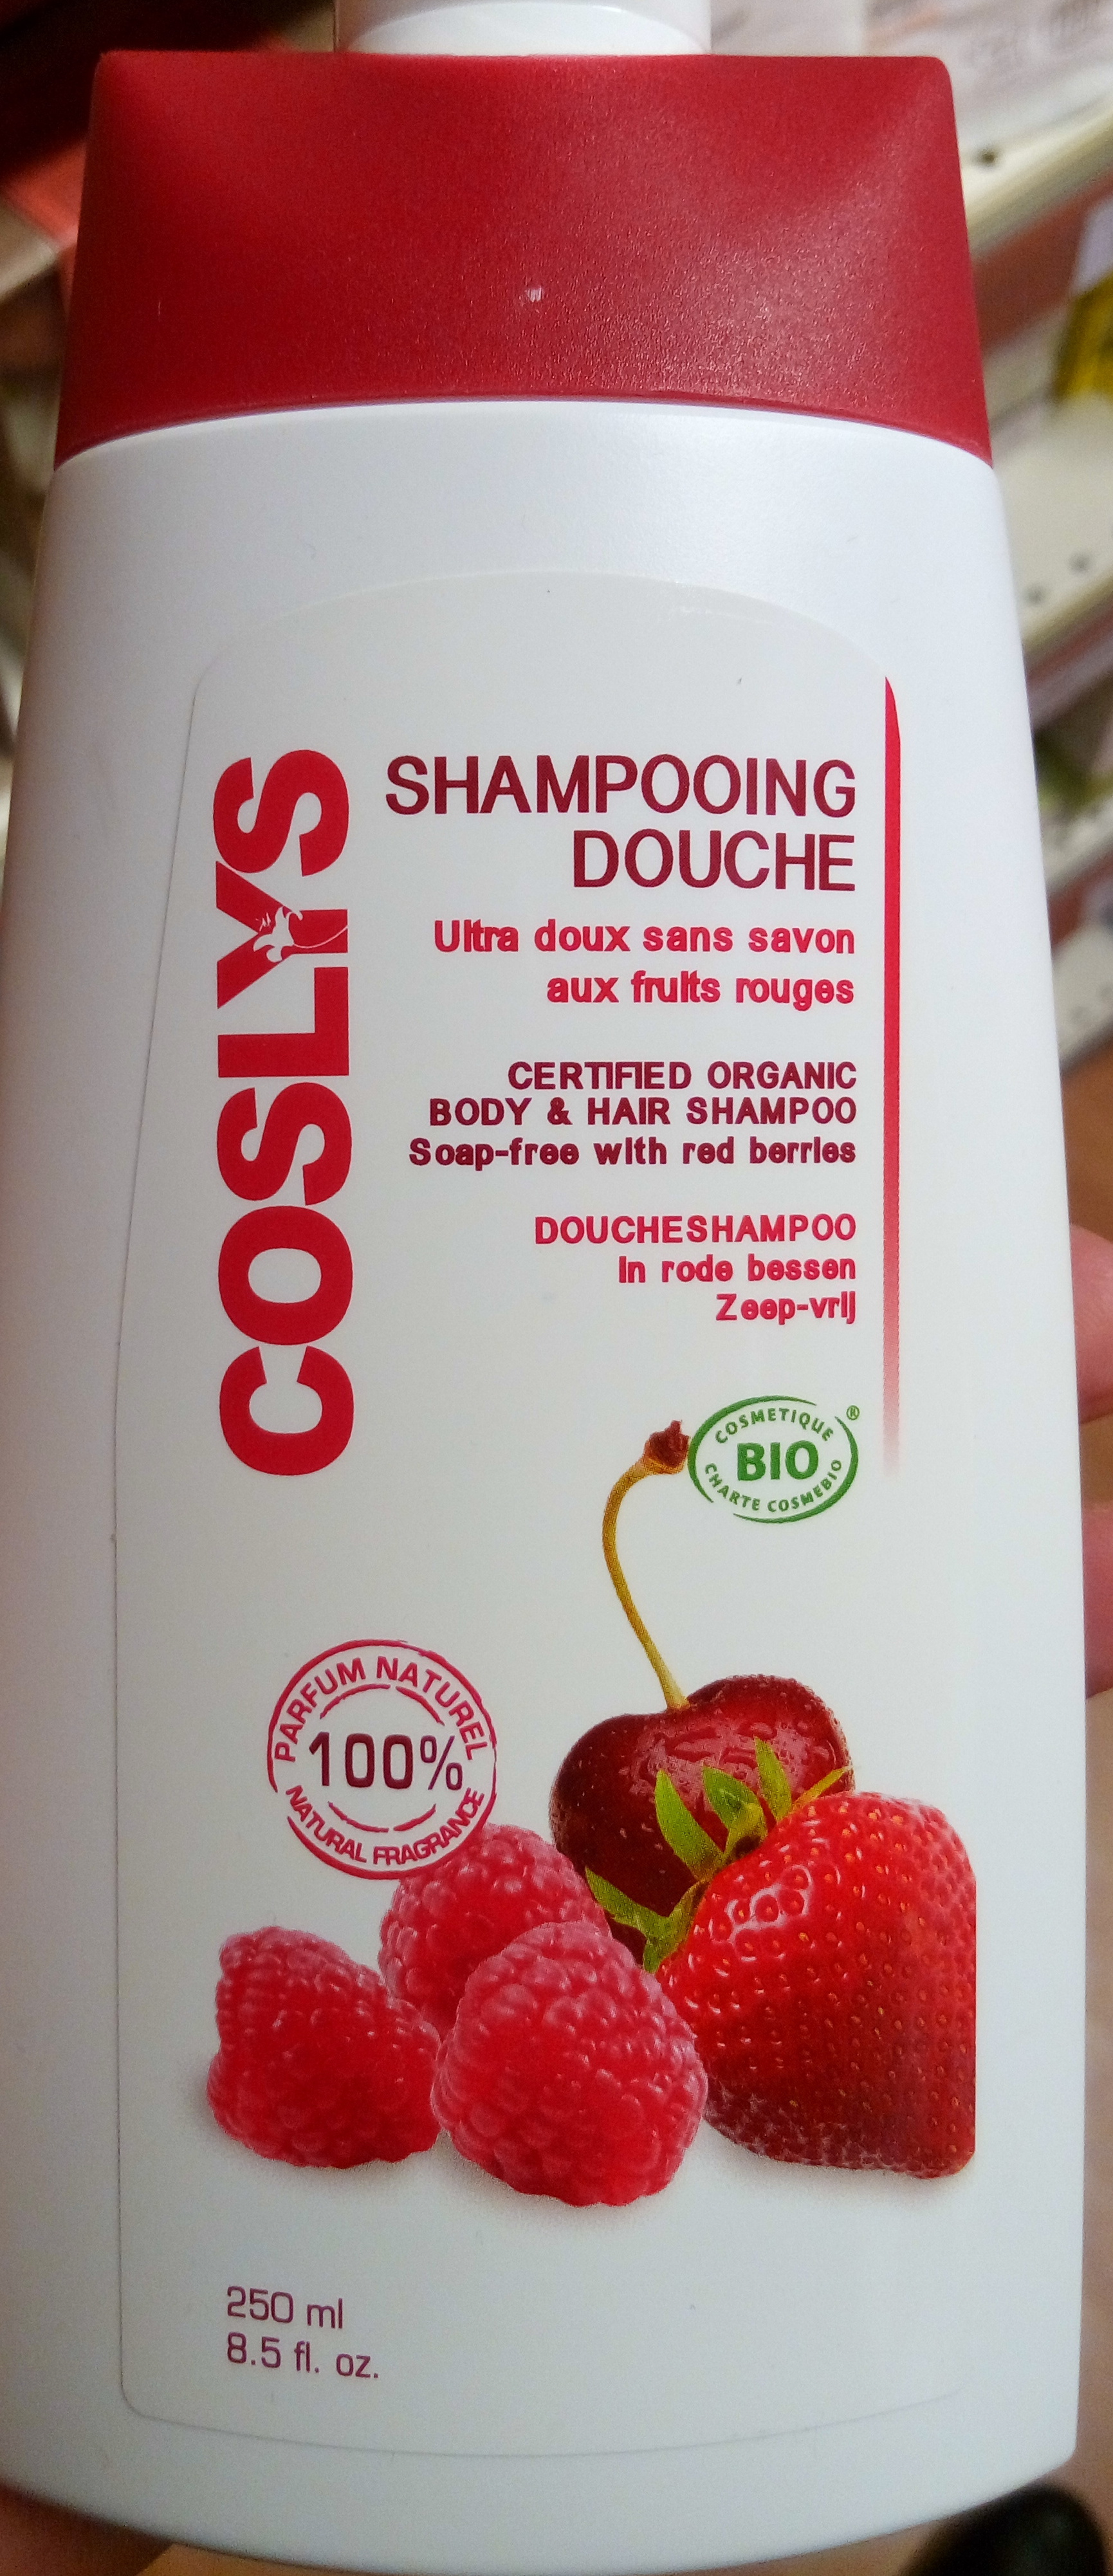 Shampooing douche ultra doux sans savon aux fruits rouges - Product - fr